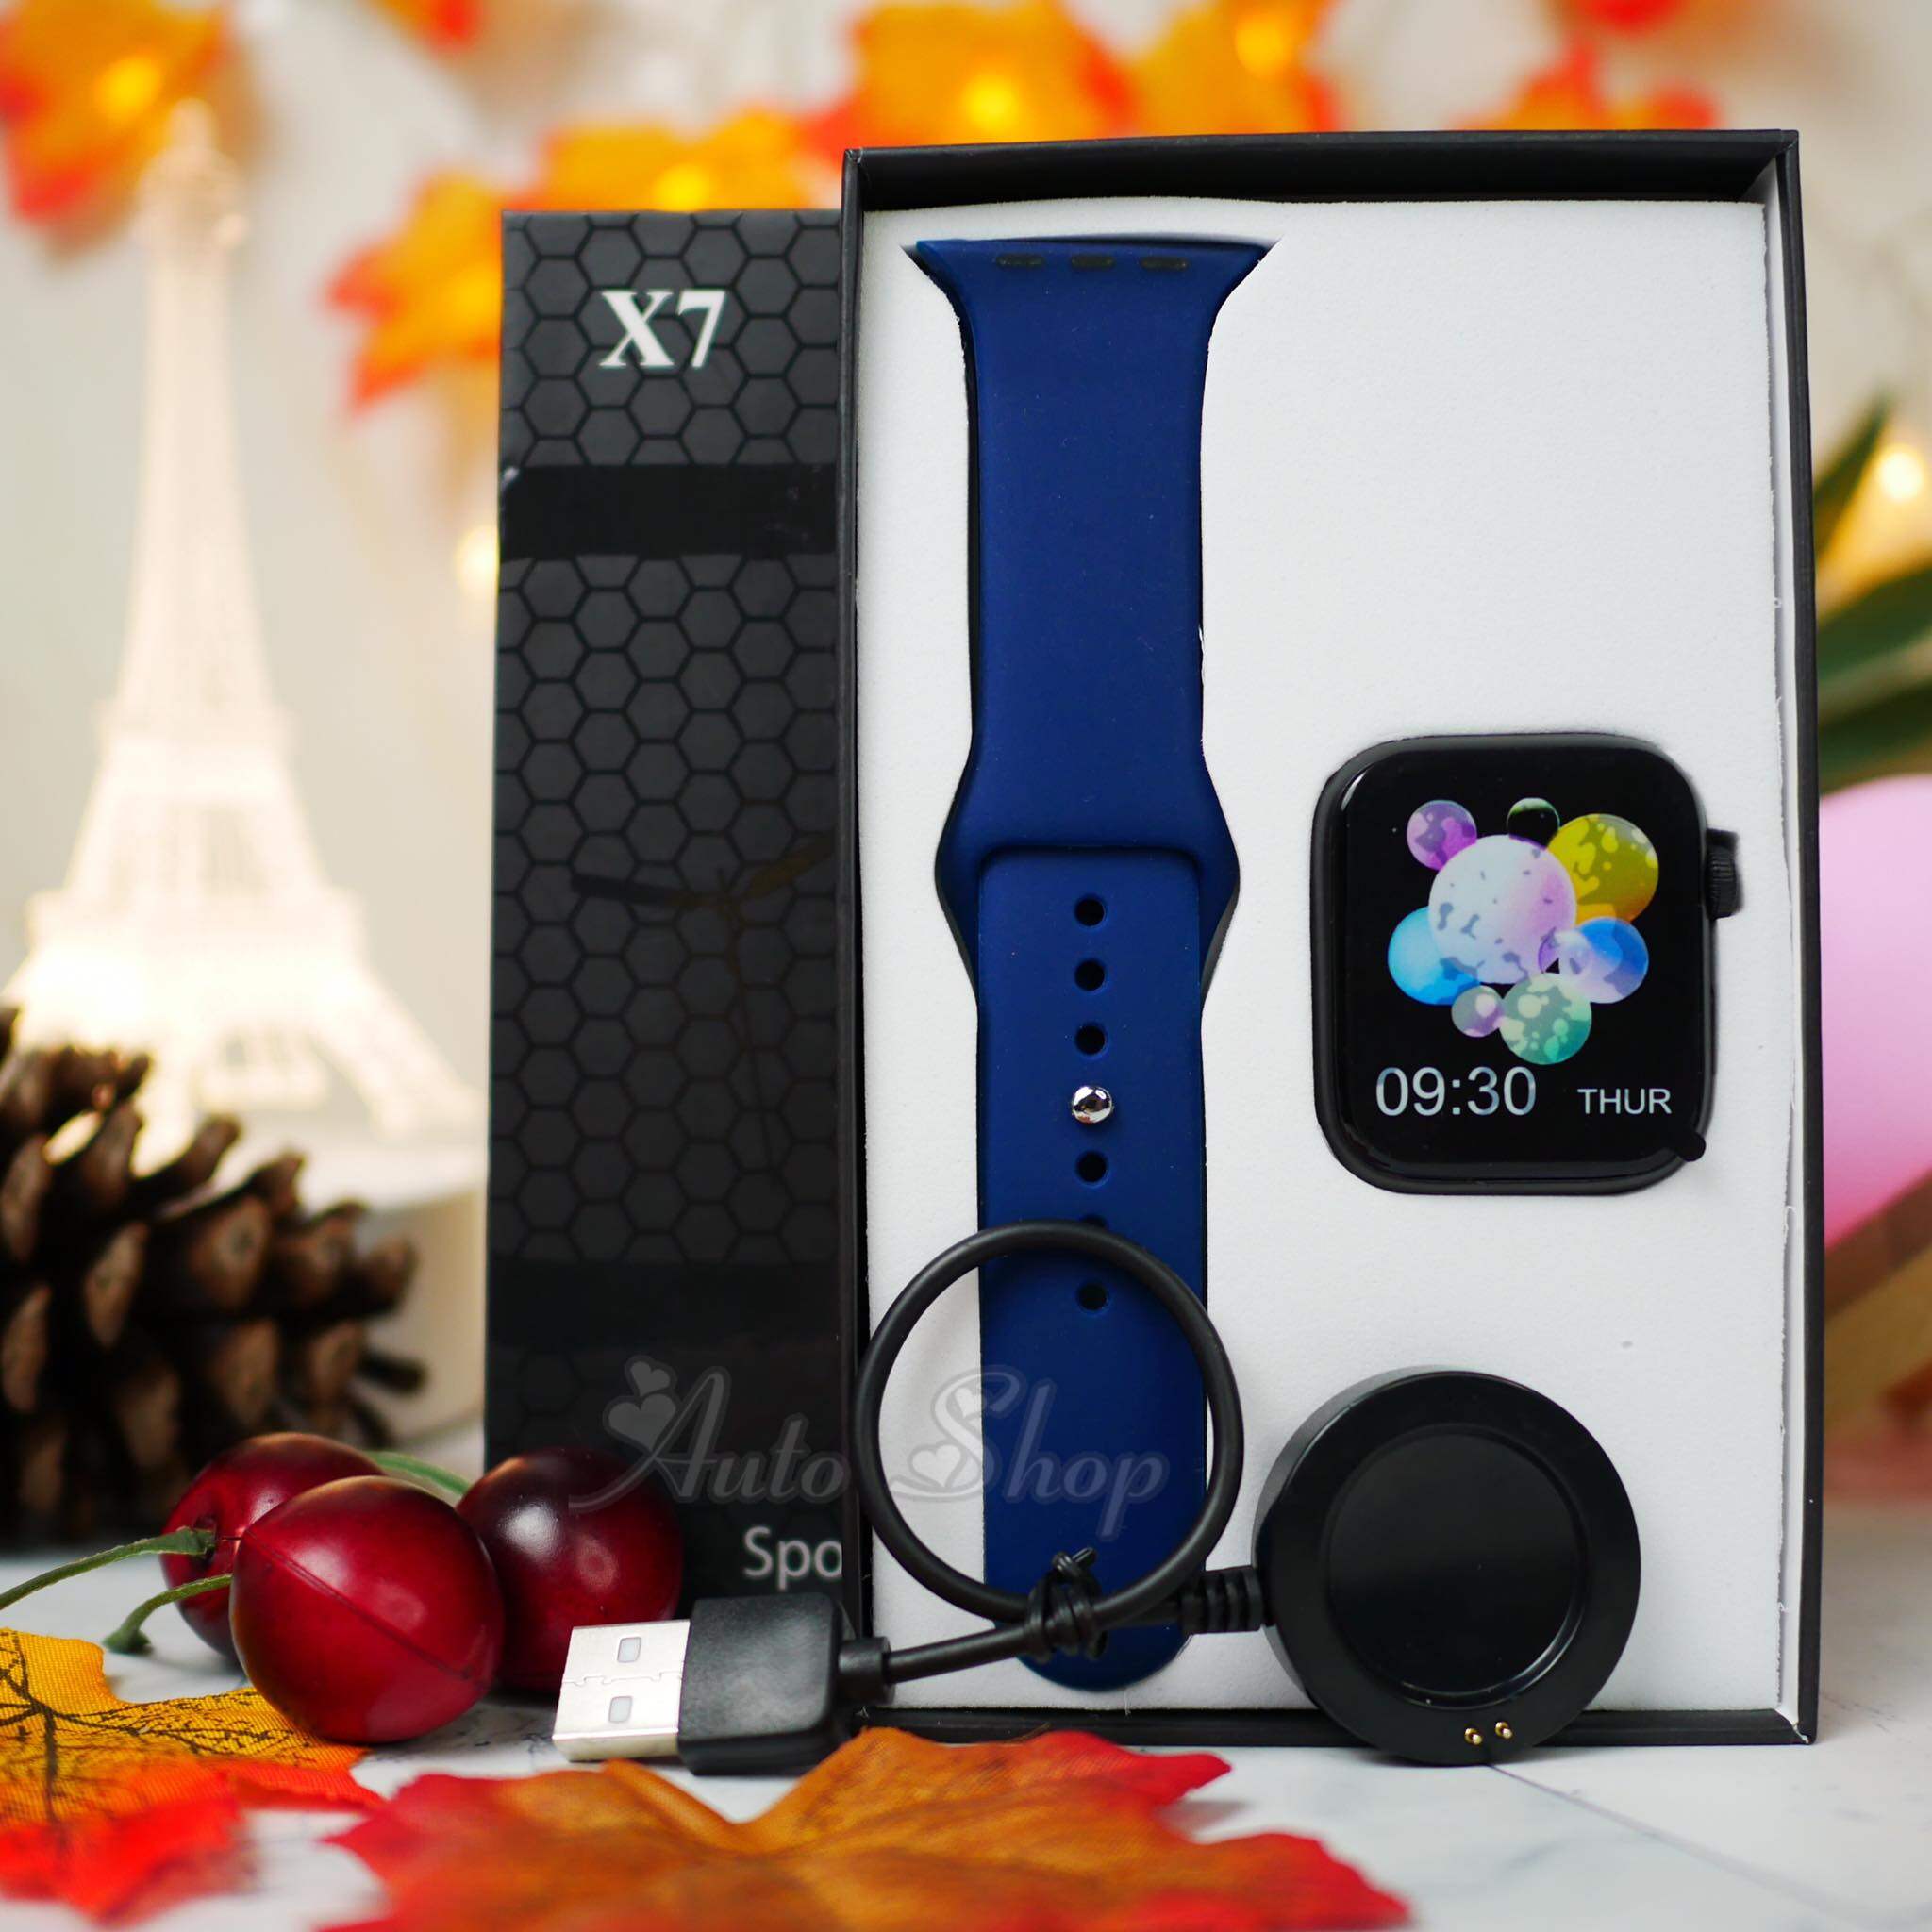 นาฬิกา สมาร์ทวอทซ์ Smart watch X7 pro  รุ่นใหม่ล่าสุด ***แถมฟิล์มกันรอย